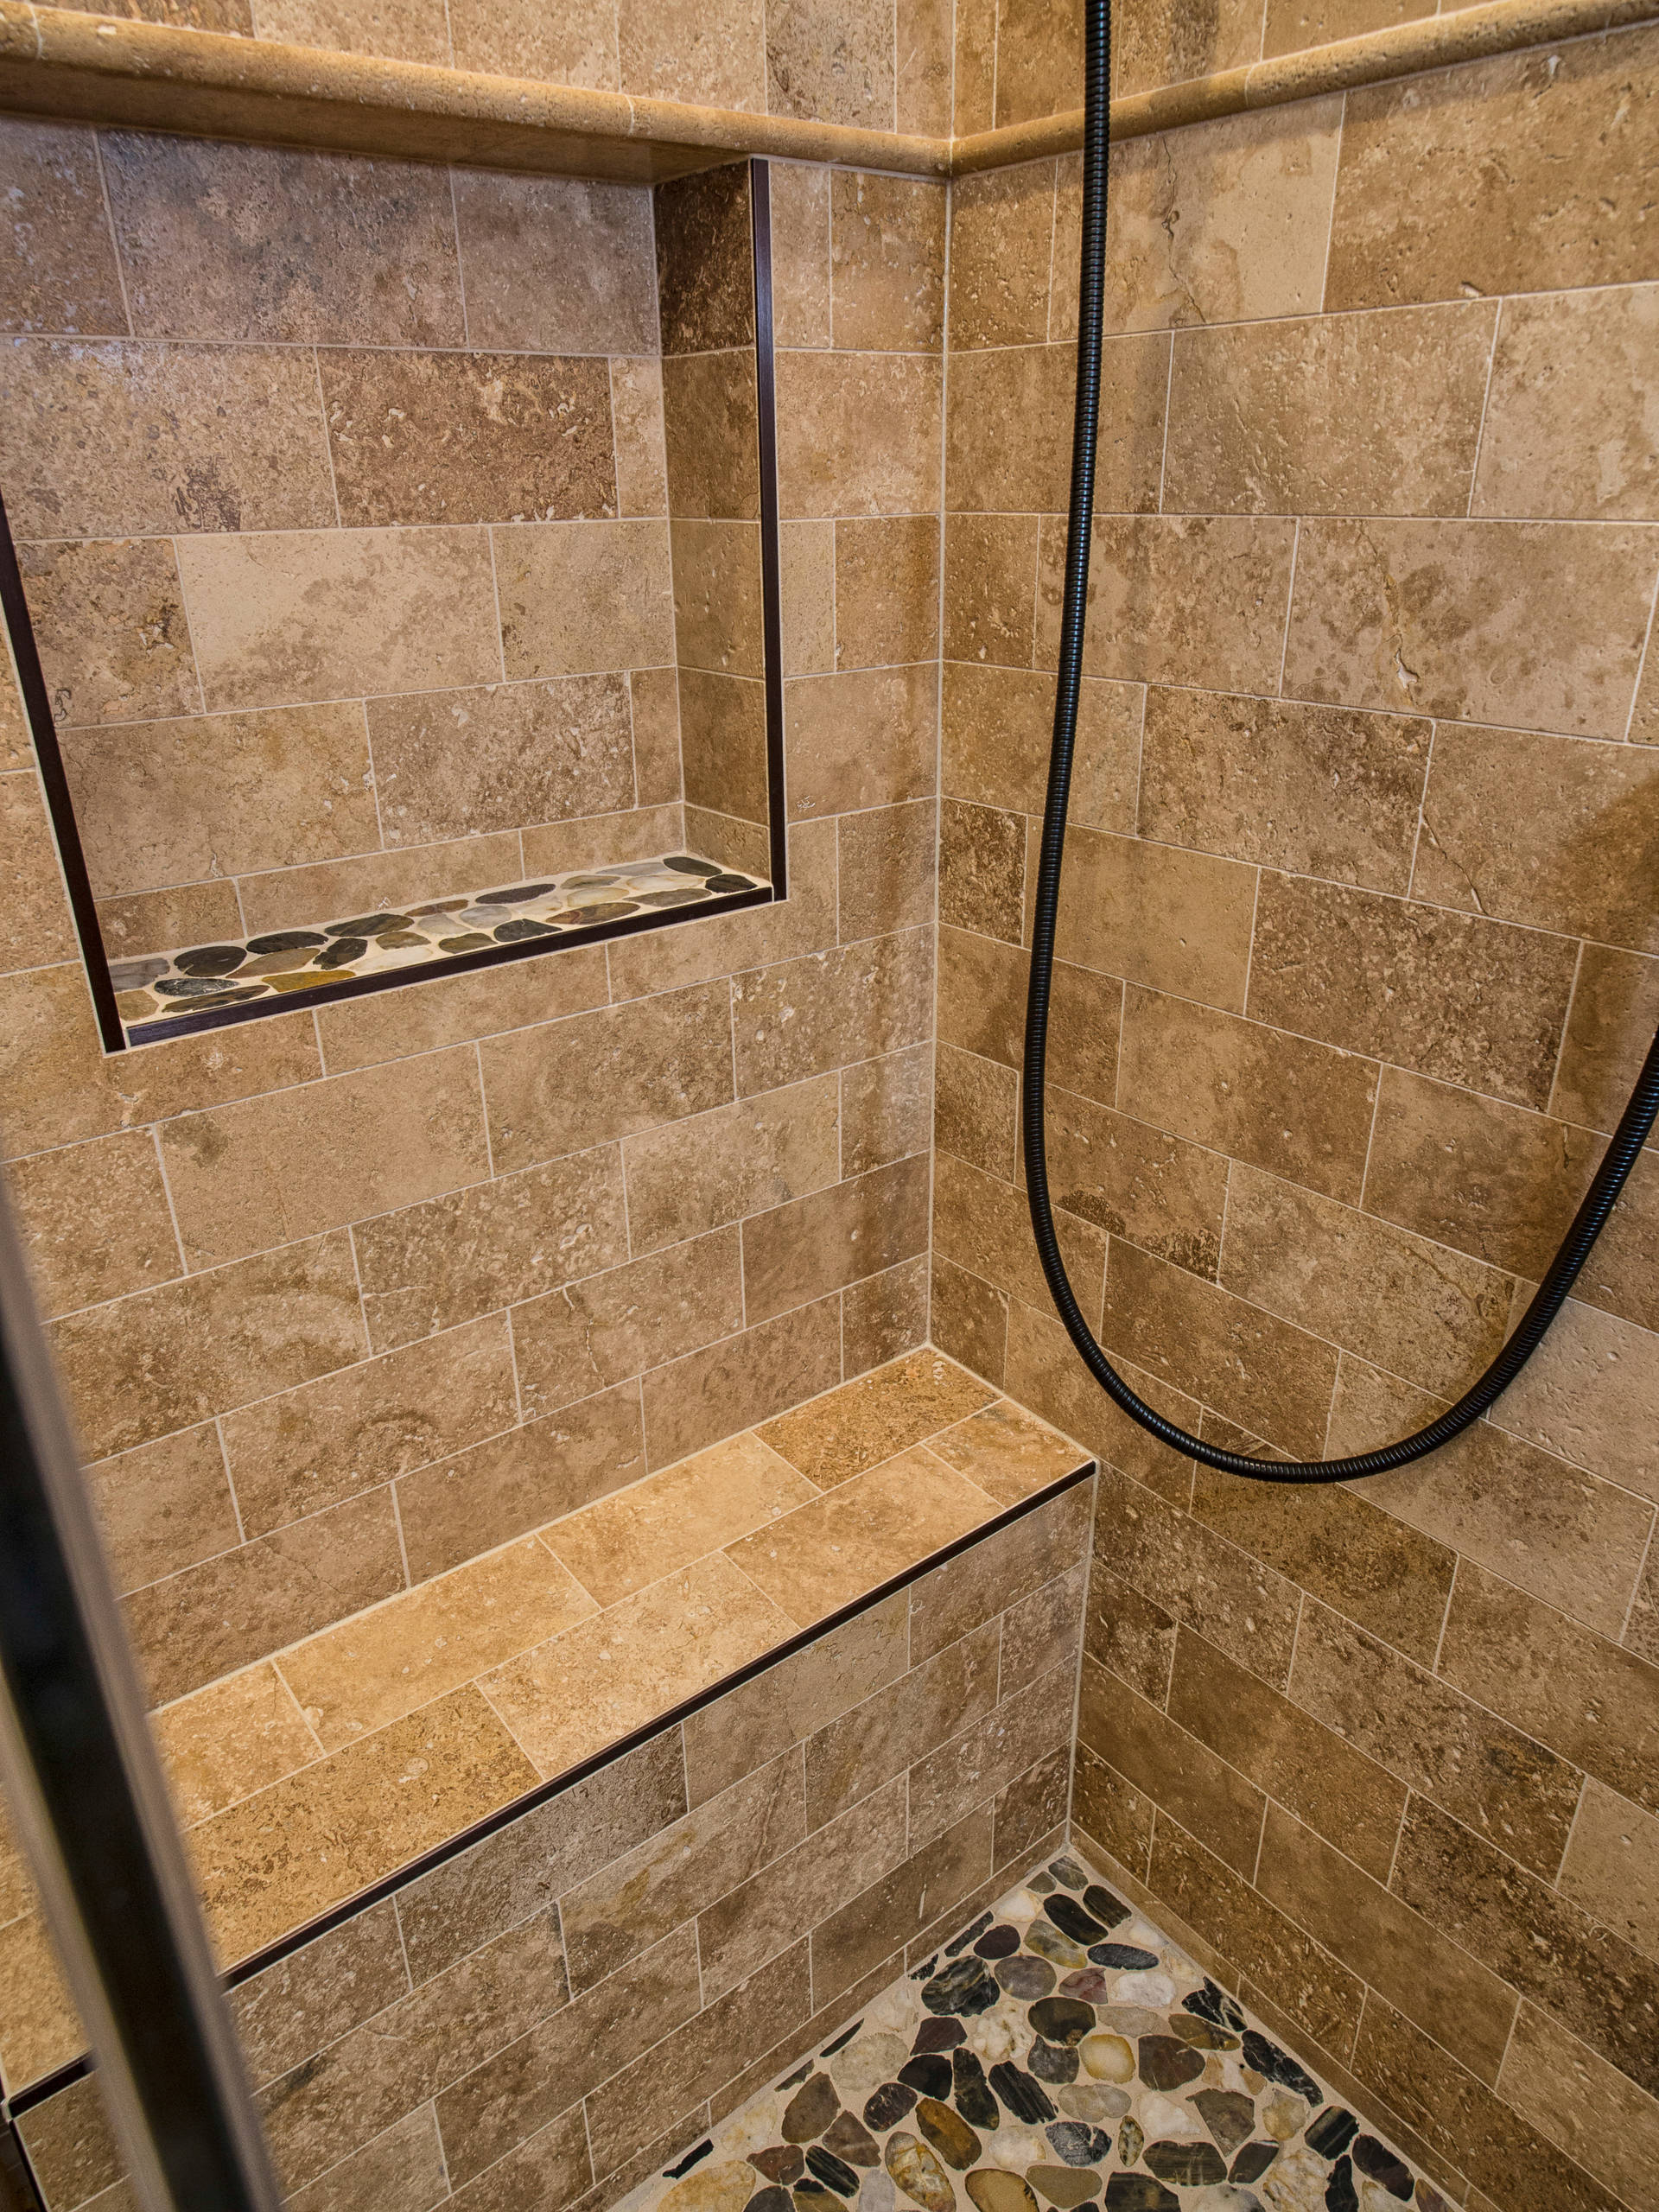 Cinnamon Hills Guest Bathroom Renovationbat